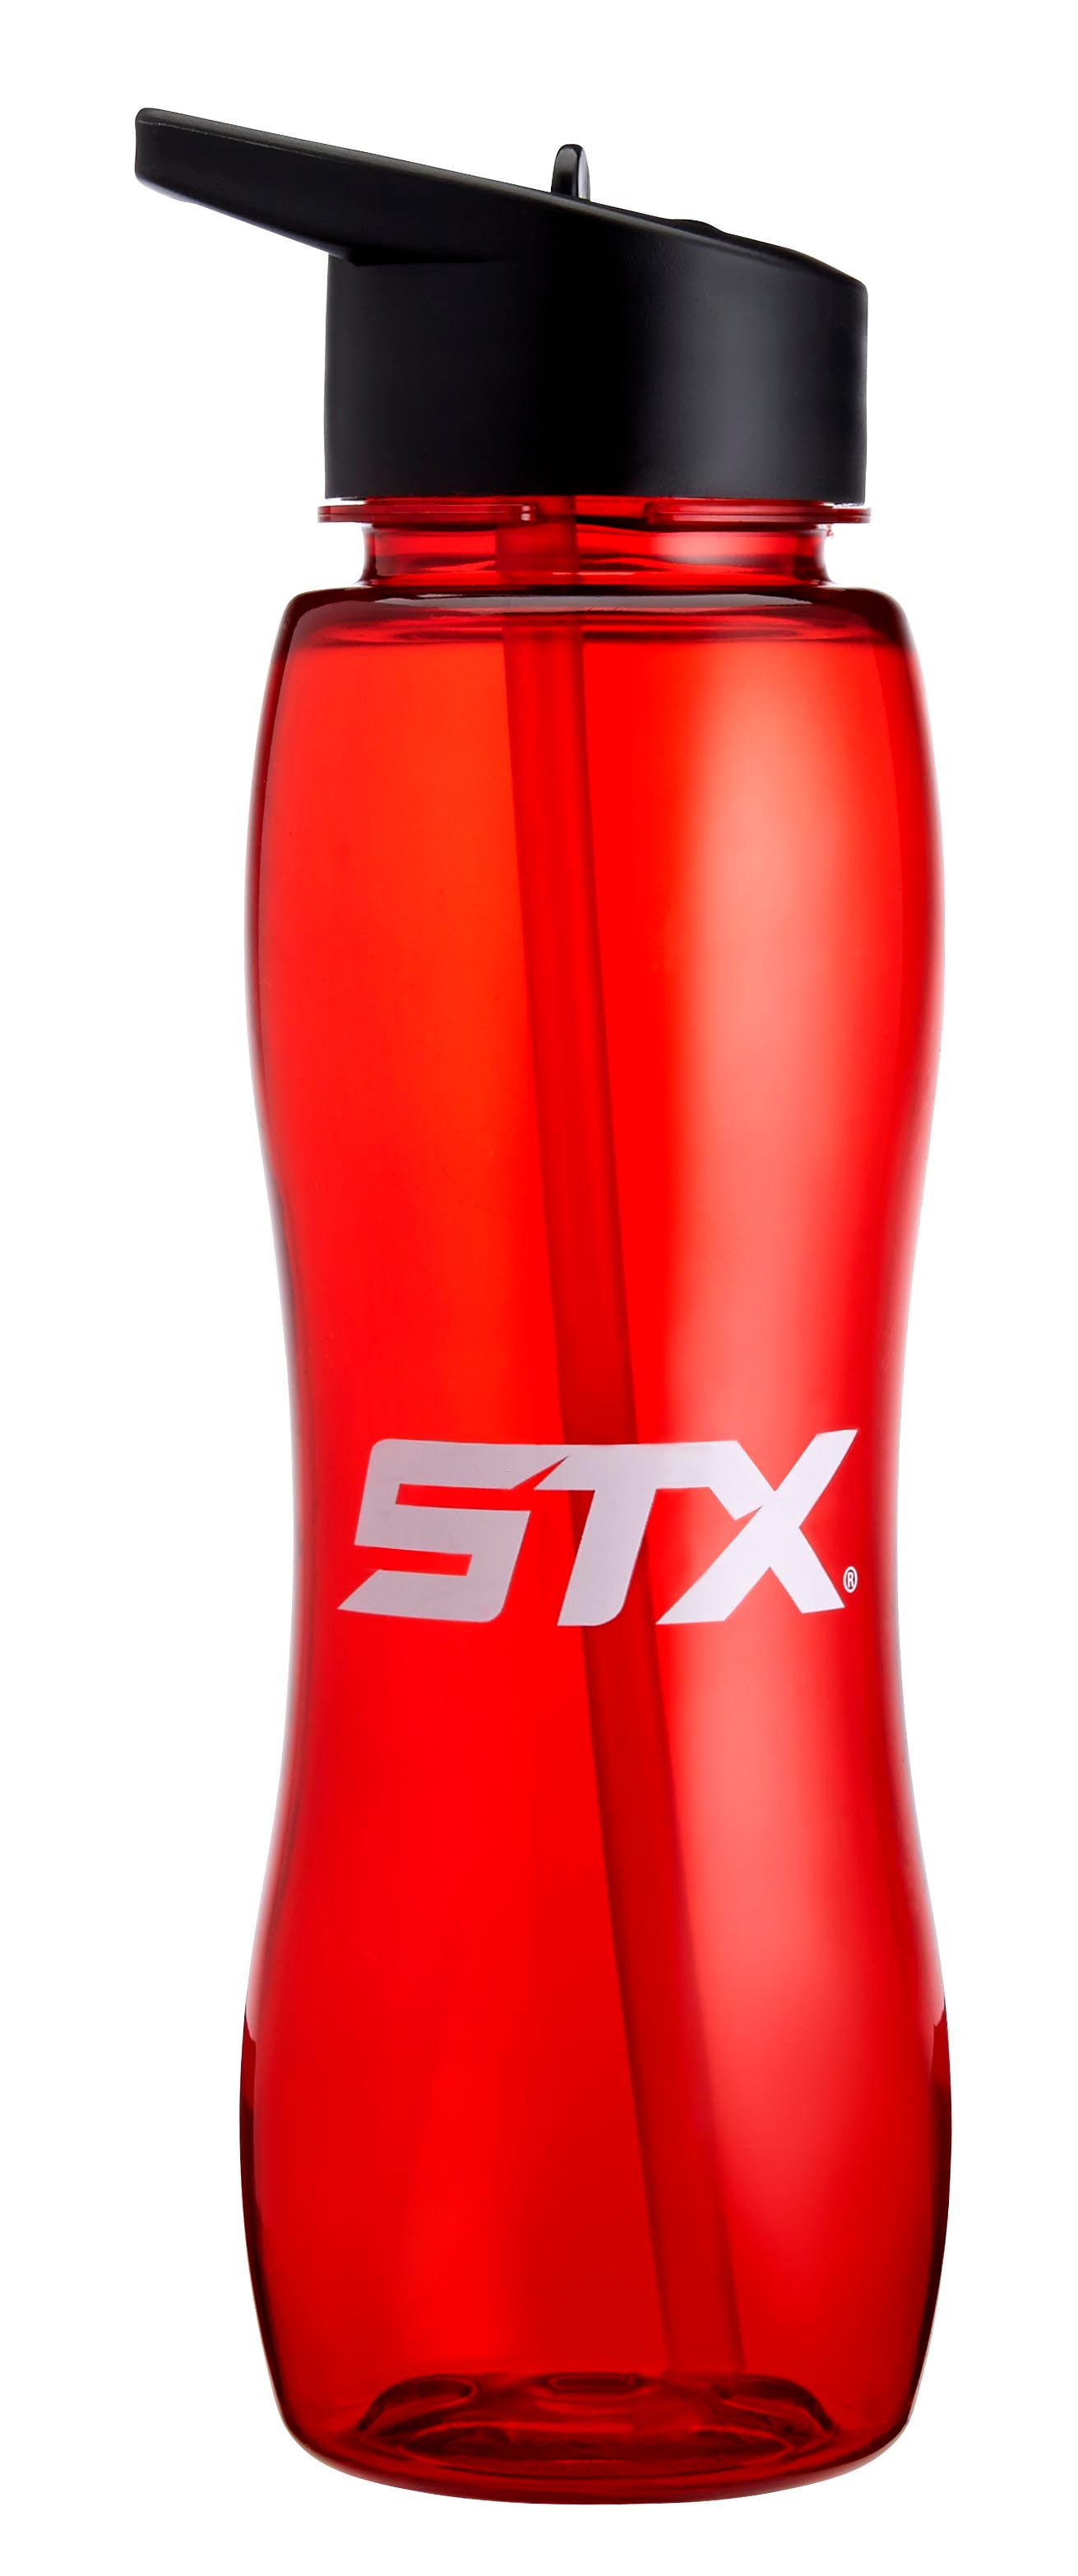 STX Lacrosse STX Water Bottle With Long Straw